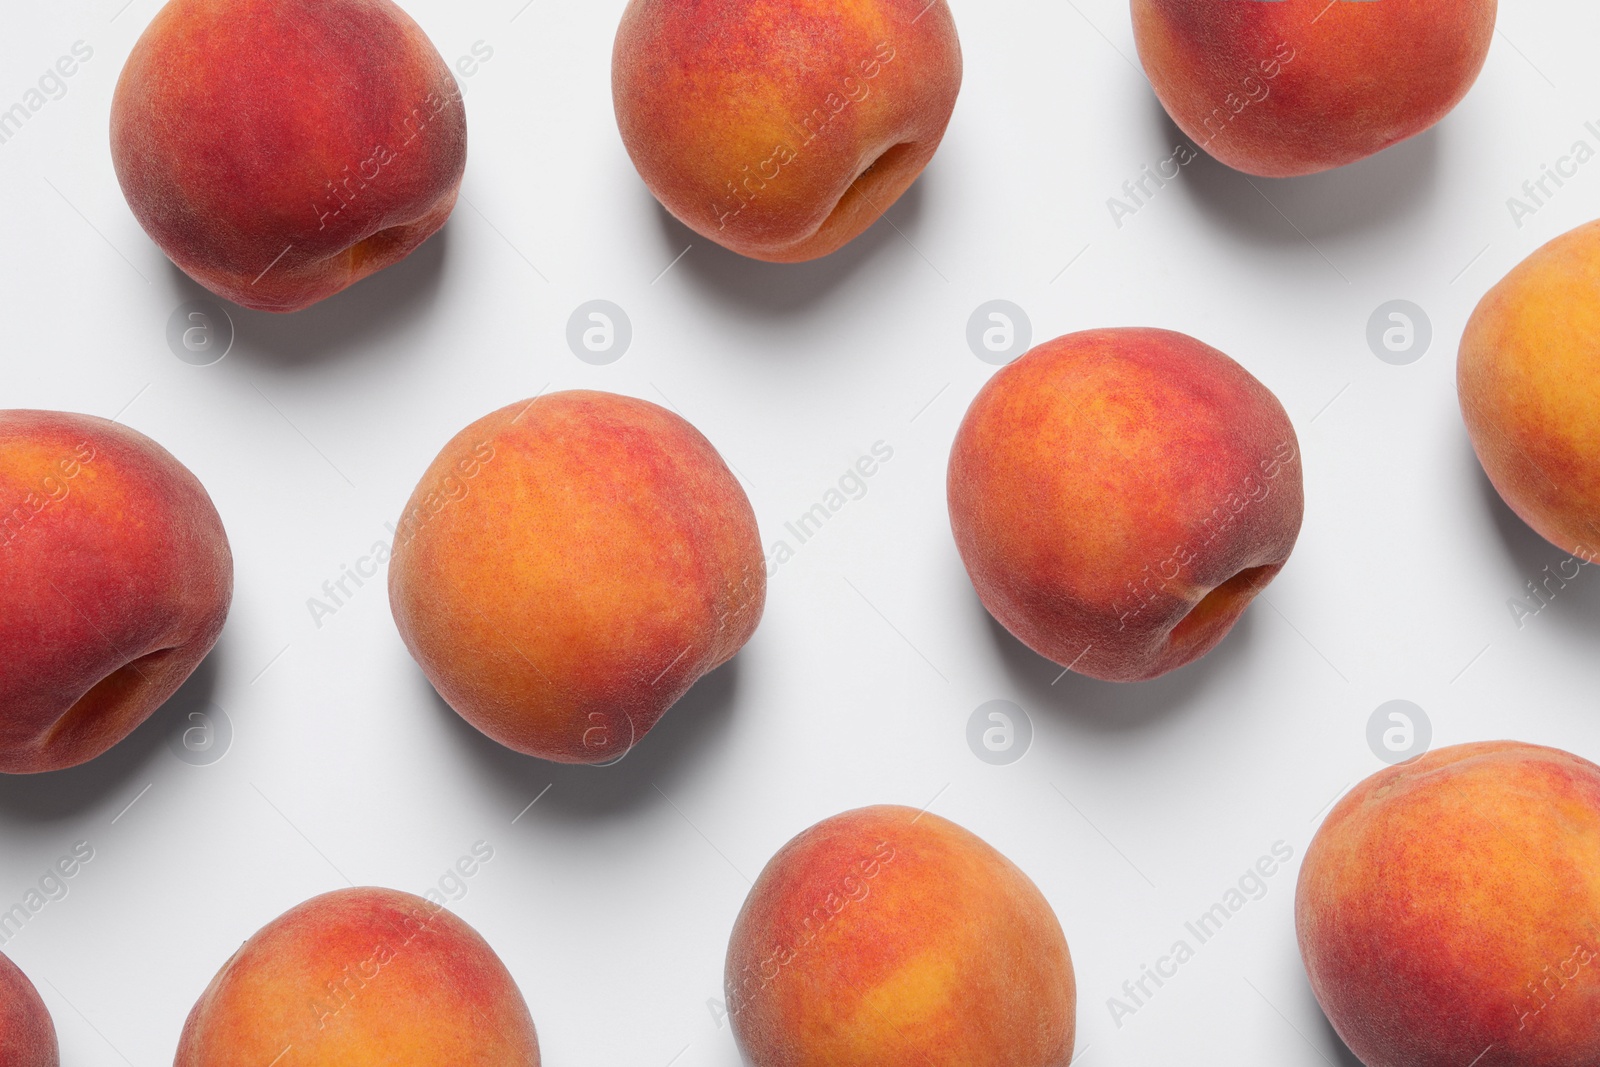 Photo of Many whole fresh ripe peaches on white background, flat lay